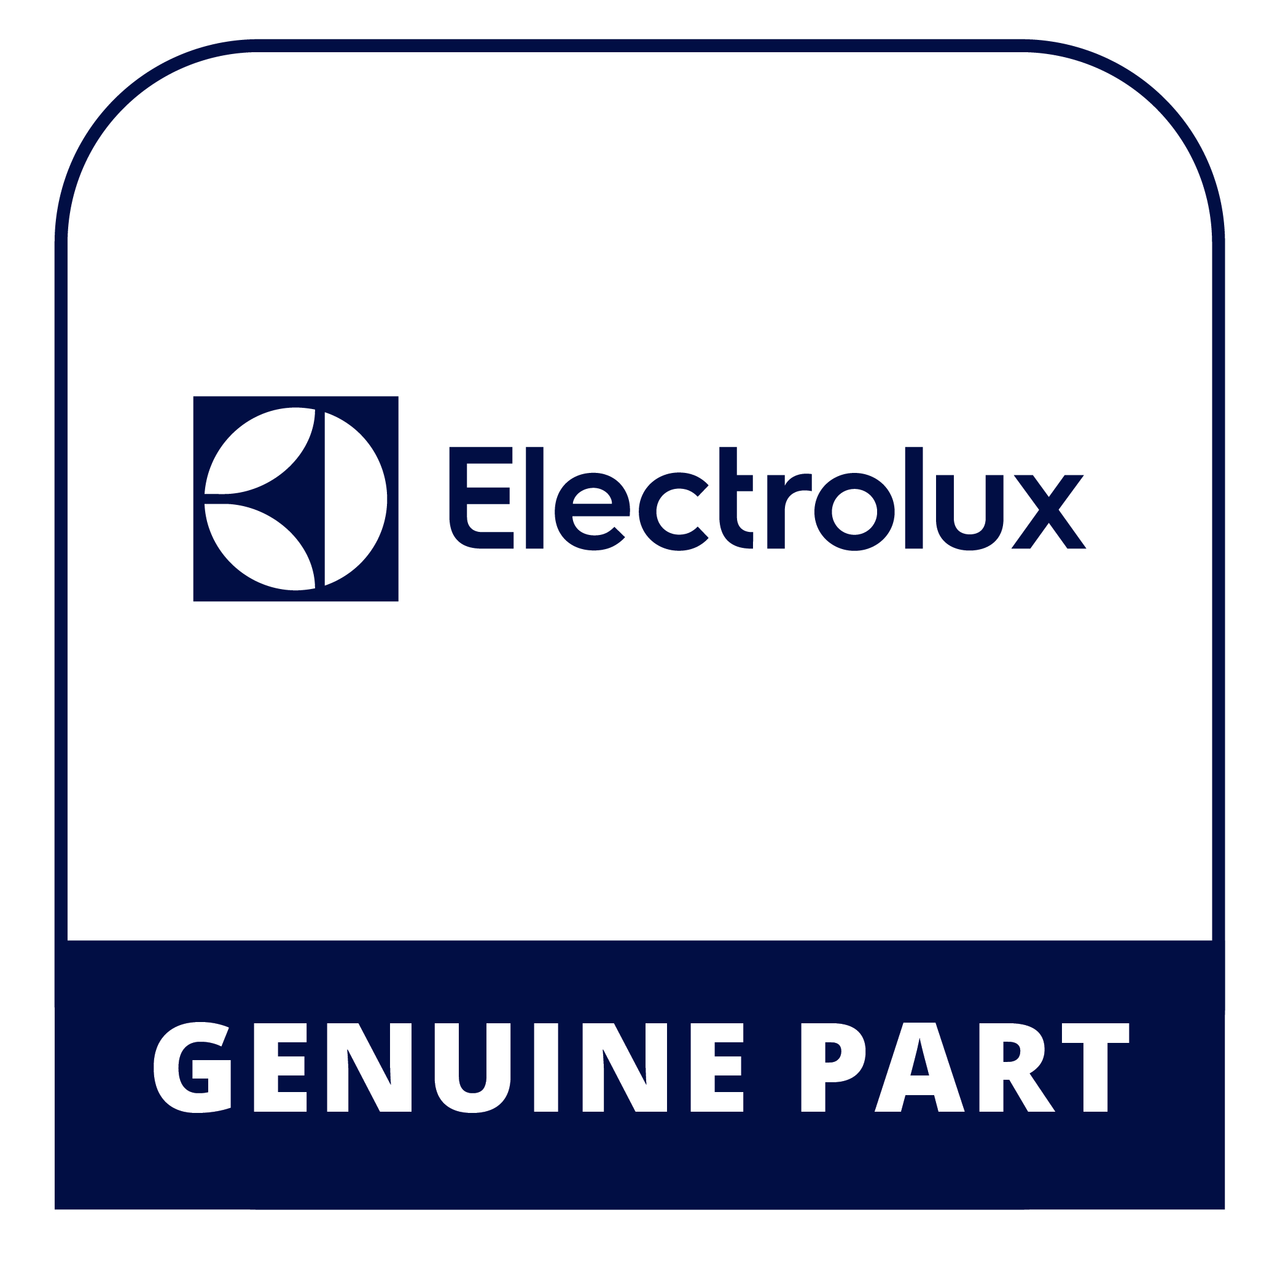 Frigidaire - Electrolux 5304446014 - Switch - Genuine Electrolux Part